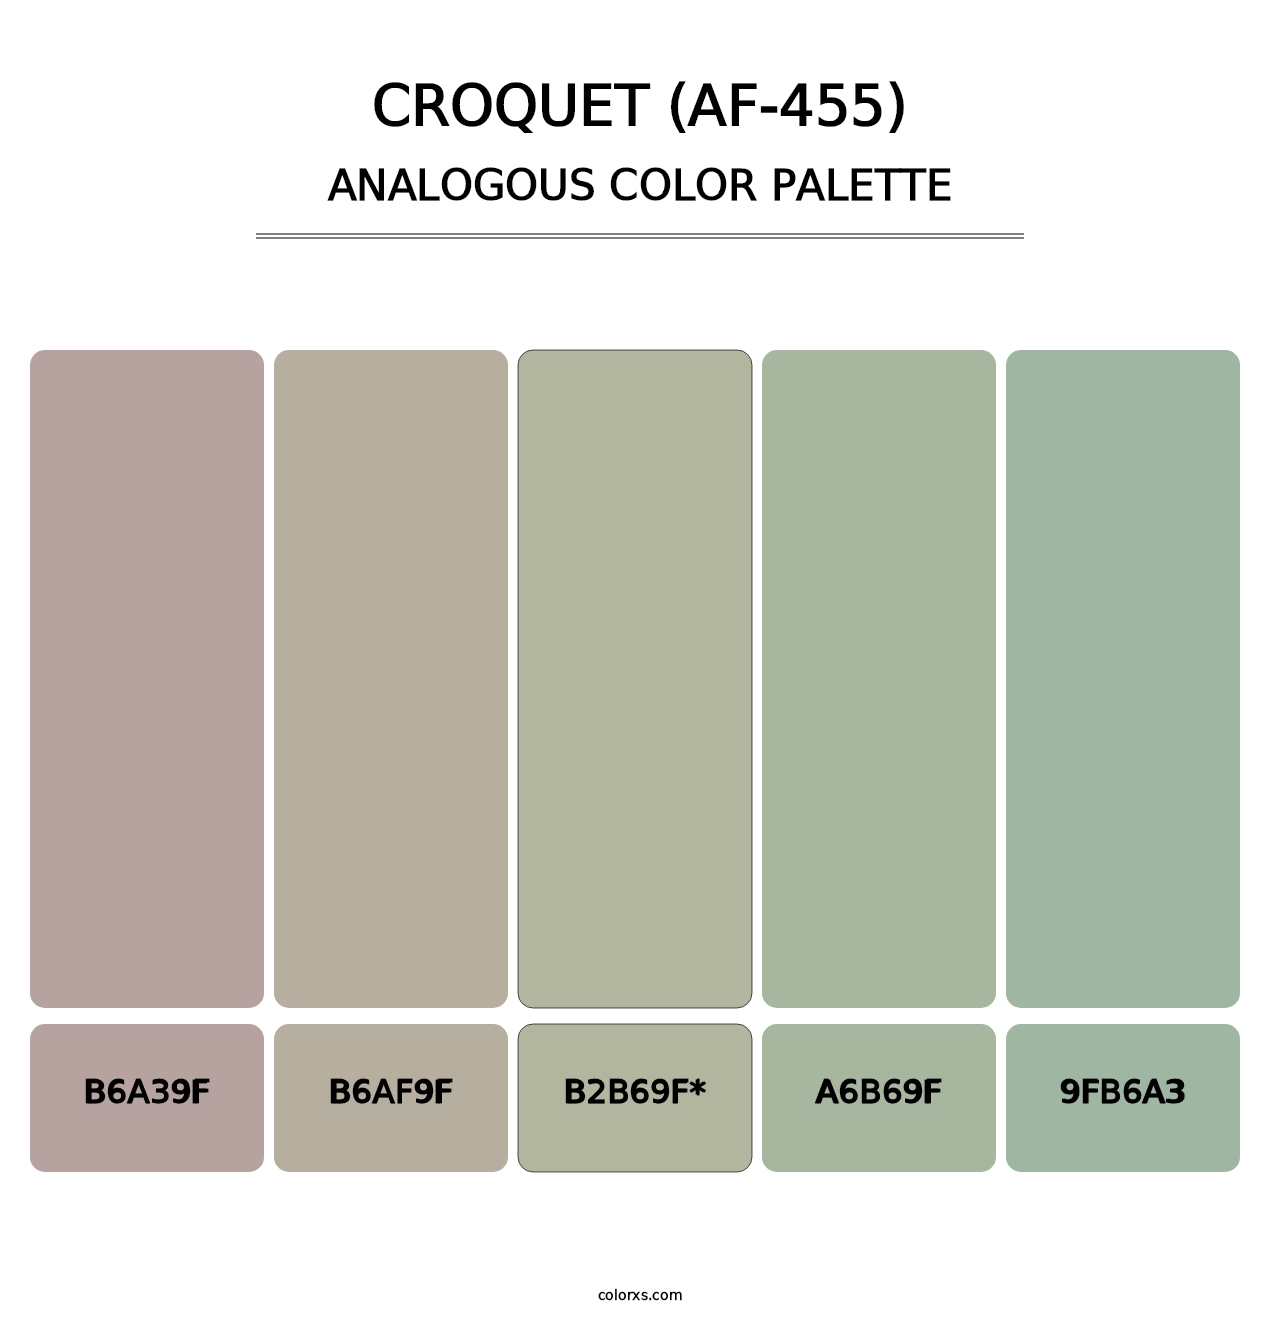 Croquet (AF-455) - Analogous Color Palette